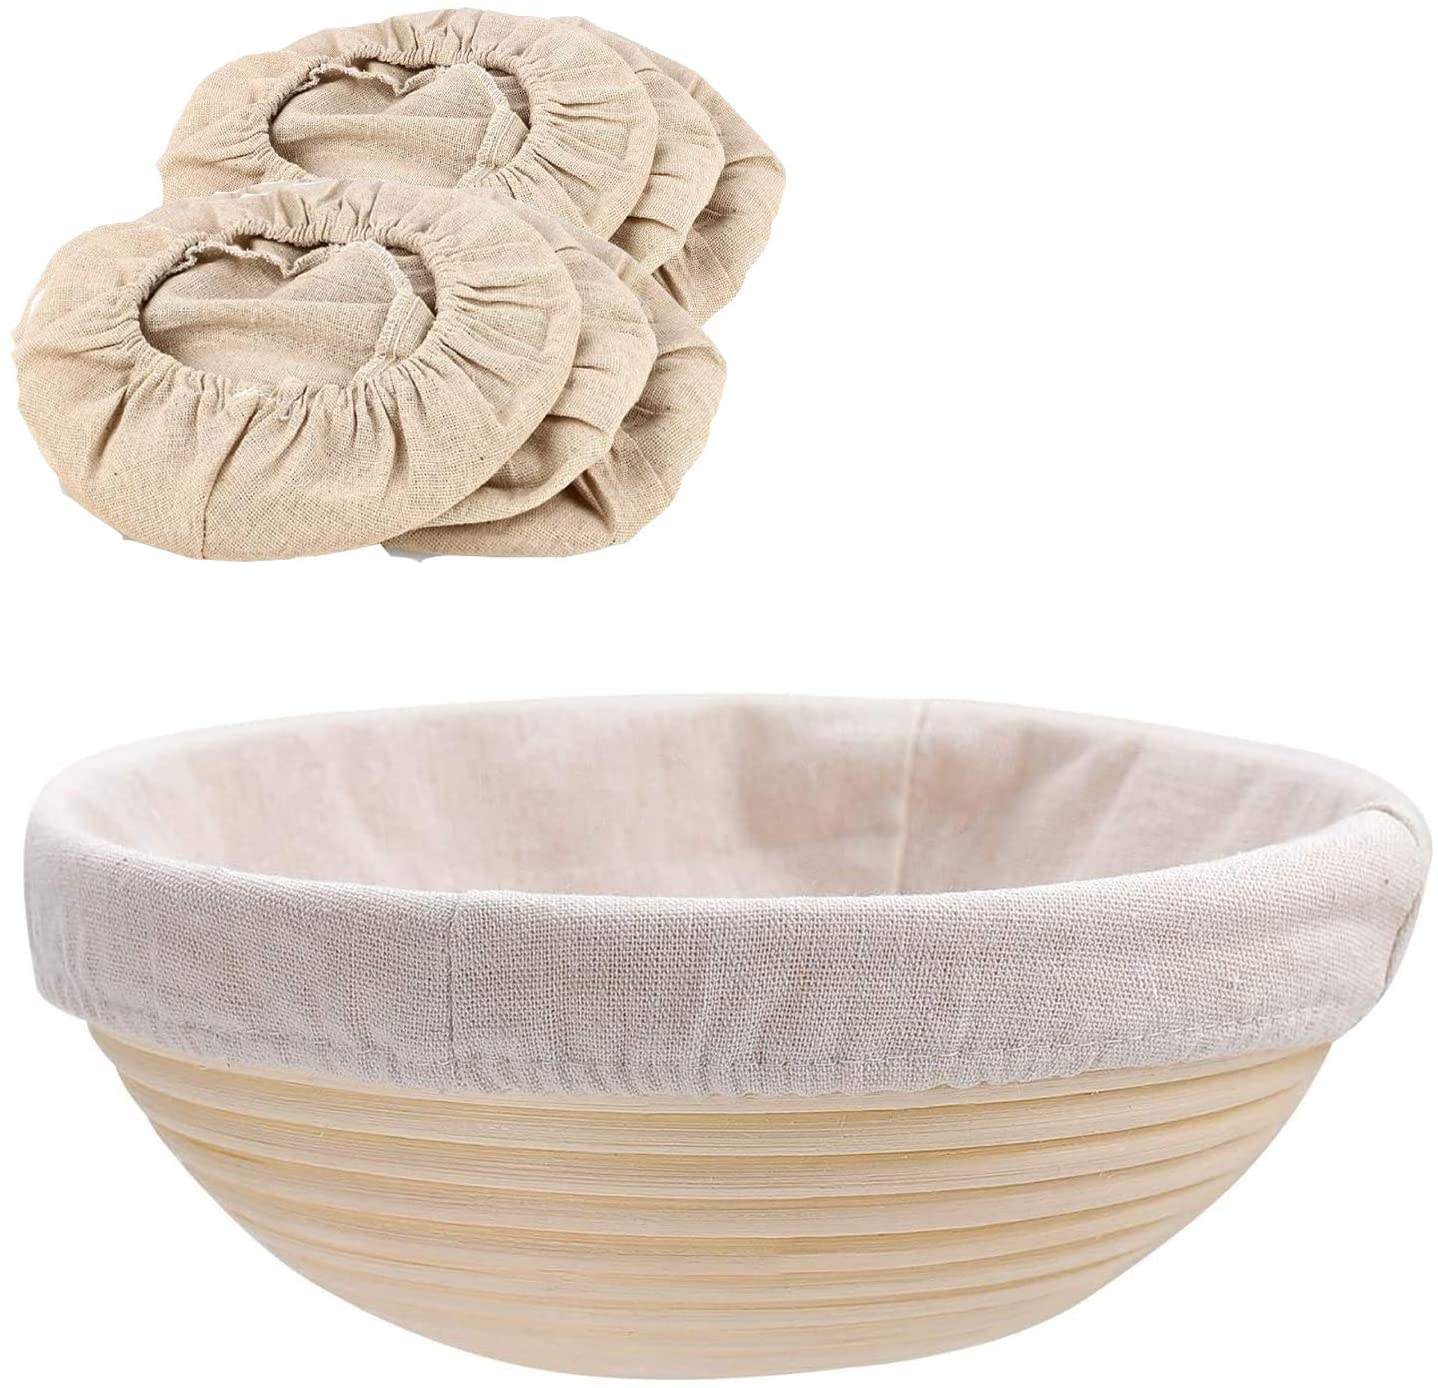 Venta al por mayor, cubierta de cuenco reutilizable para prueba de pan redondo de algodón, cubierta de cesta para hornear para platos